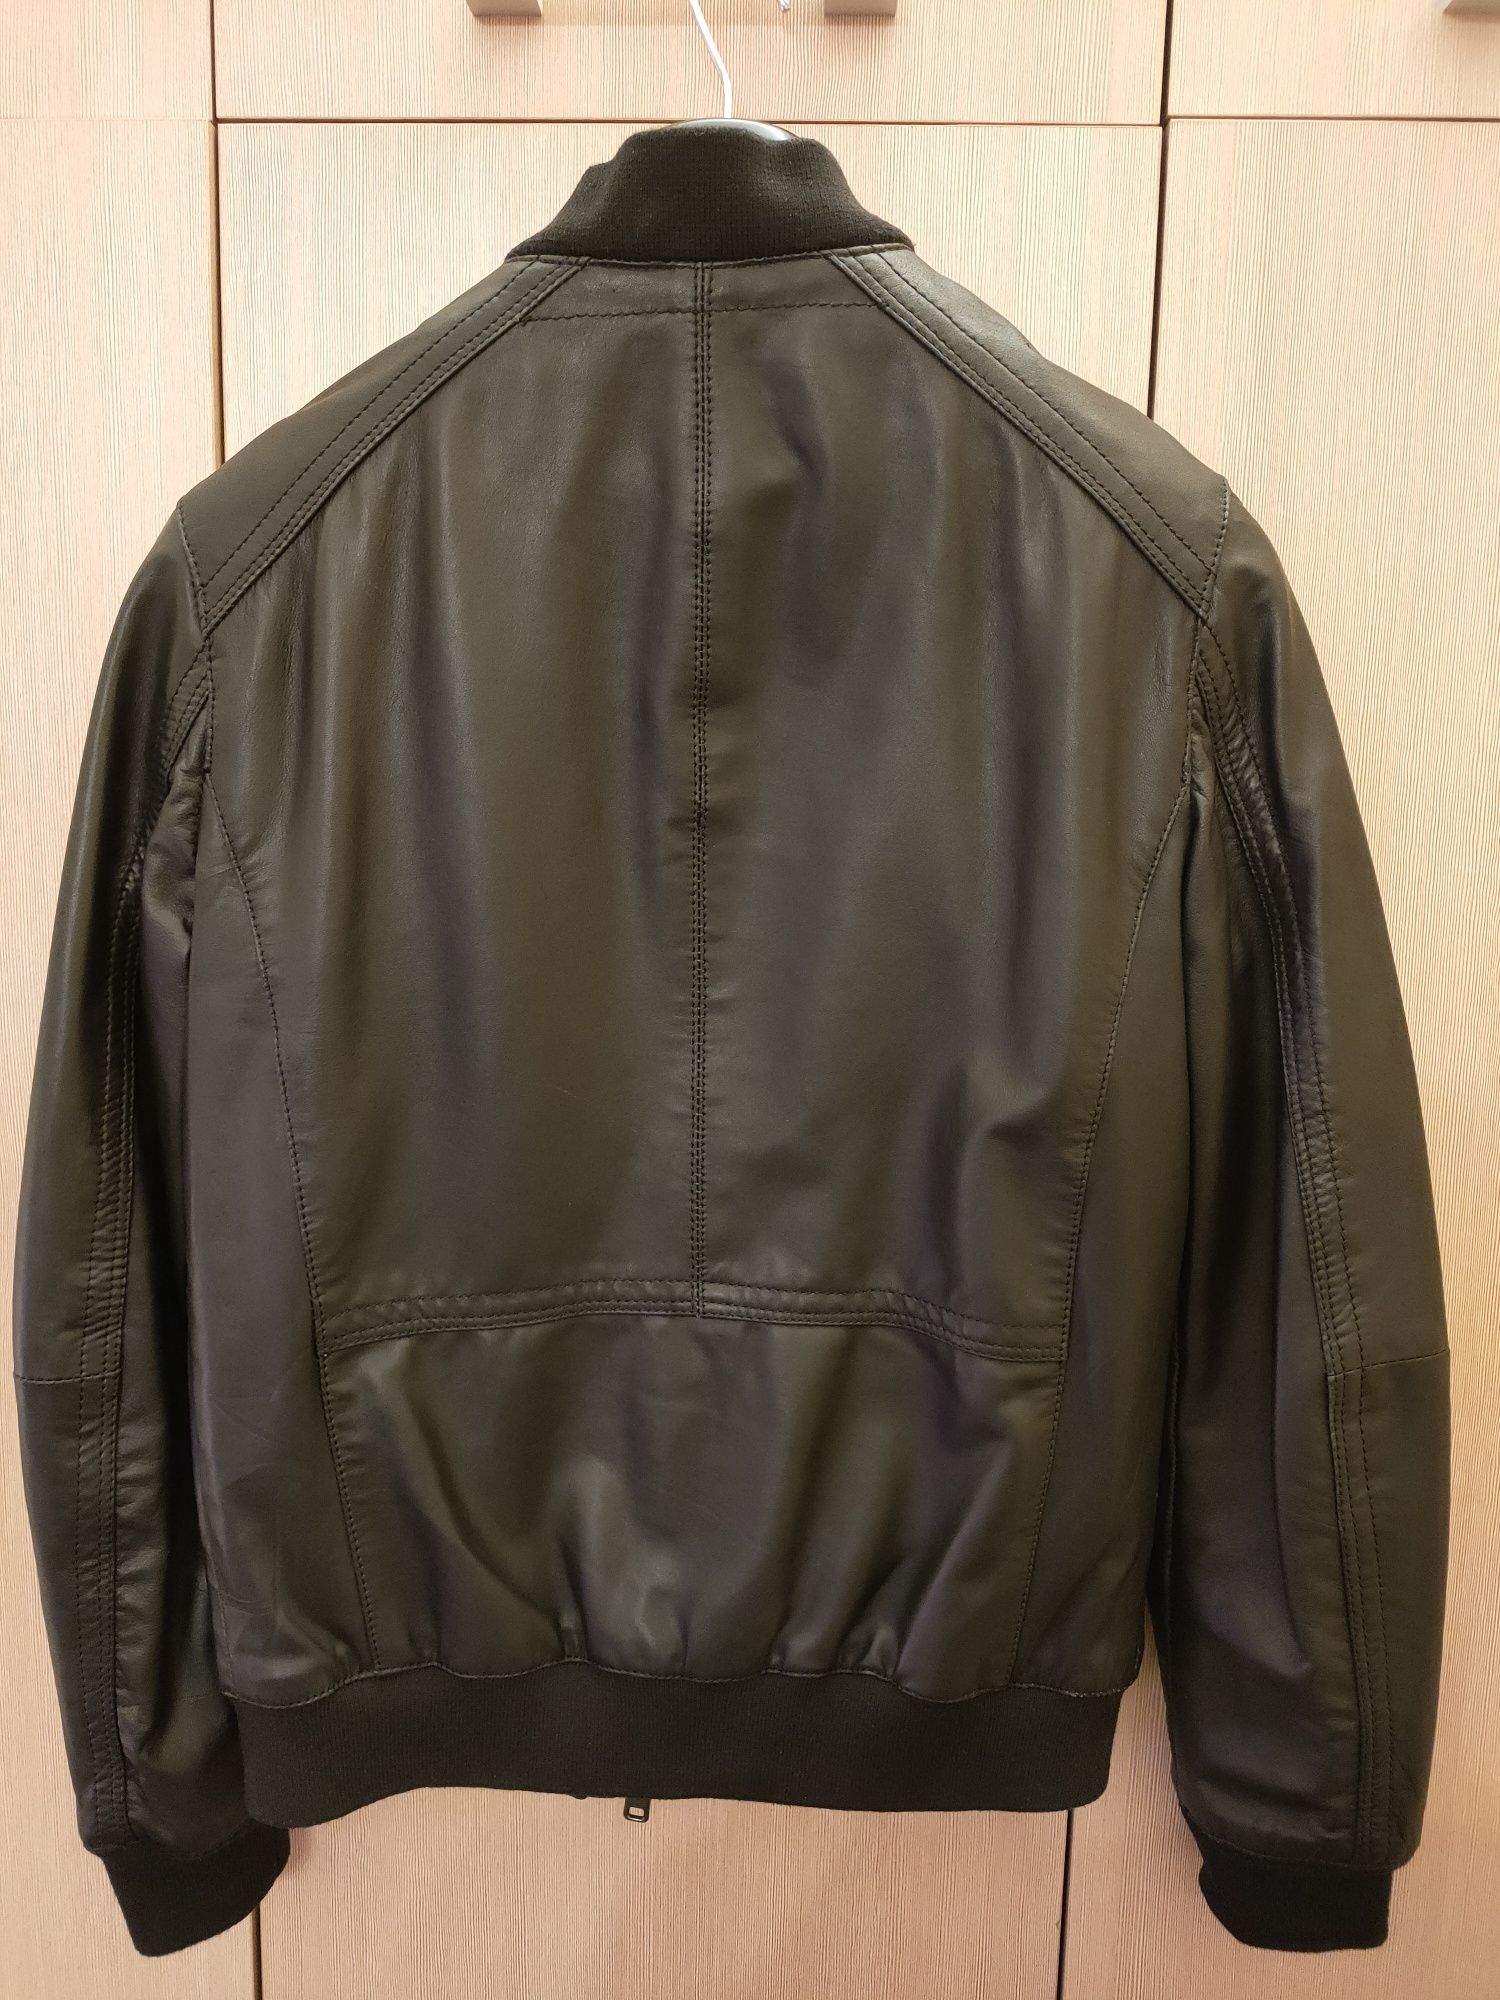 Шкіряна куртка Zara розмір S